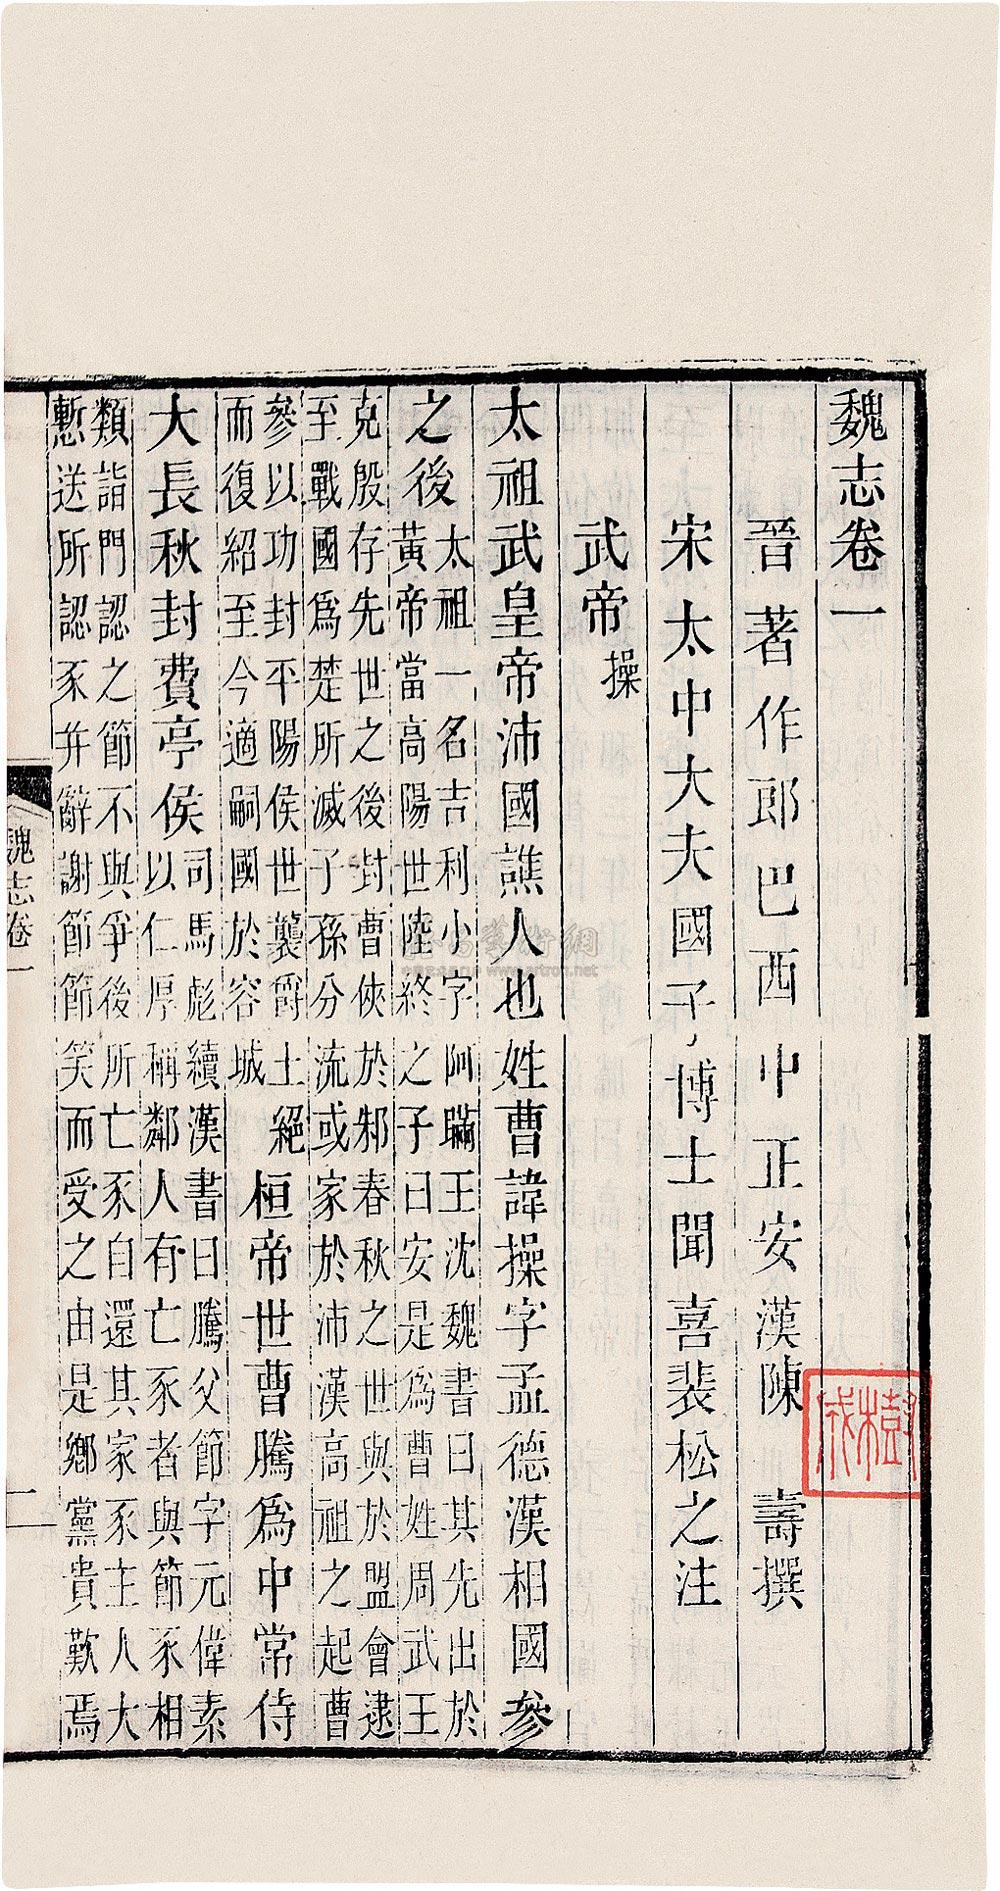 1038 西晋·陈寿编宋·裴松之 注 三国志六十五卷